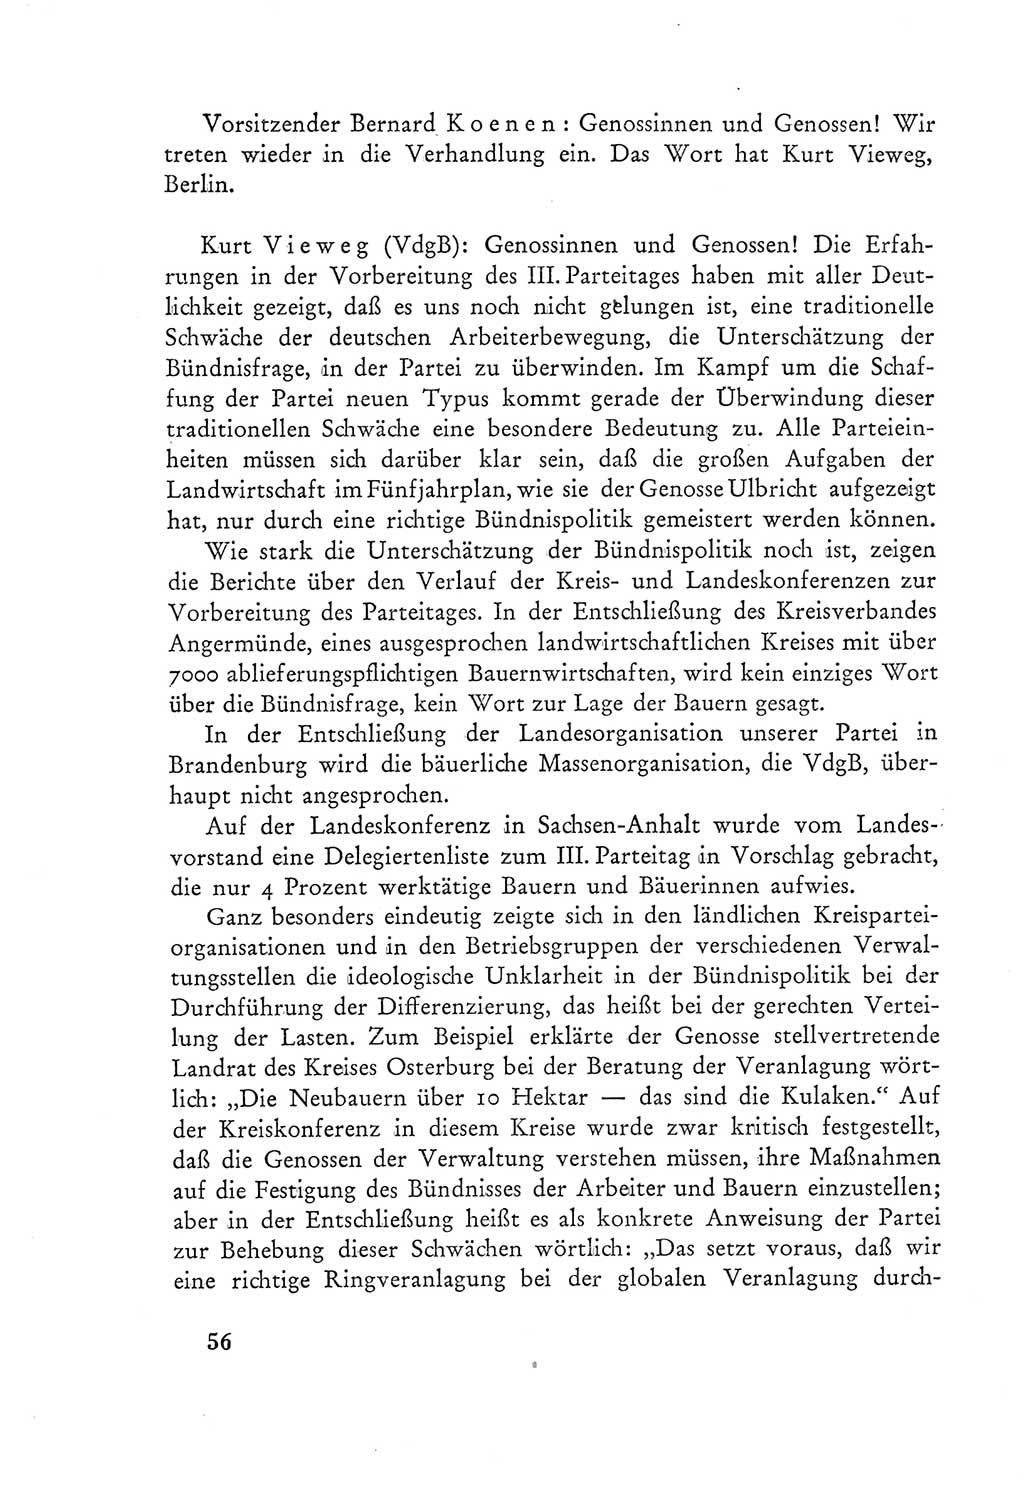 Protokoll der Verhandlungen des Ⅲ. Parteitages der Sozialistischen Einheitspartei Deutschlands (SED) [Deutsche Demokratische Republik (DDR)] 1950, Band 2, Seite 56 (Prot. Verh. Ⅲ. PT SED DDR 1950, Bd. 2, S. 56)